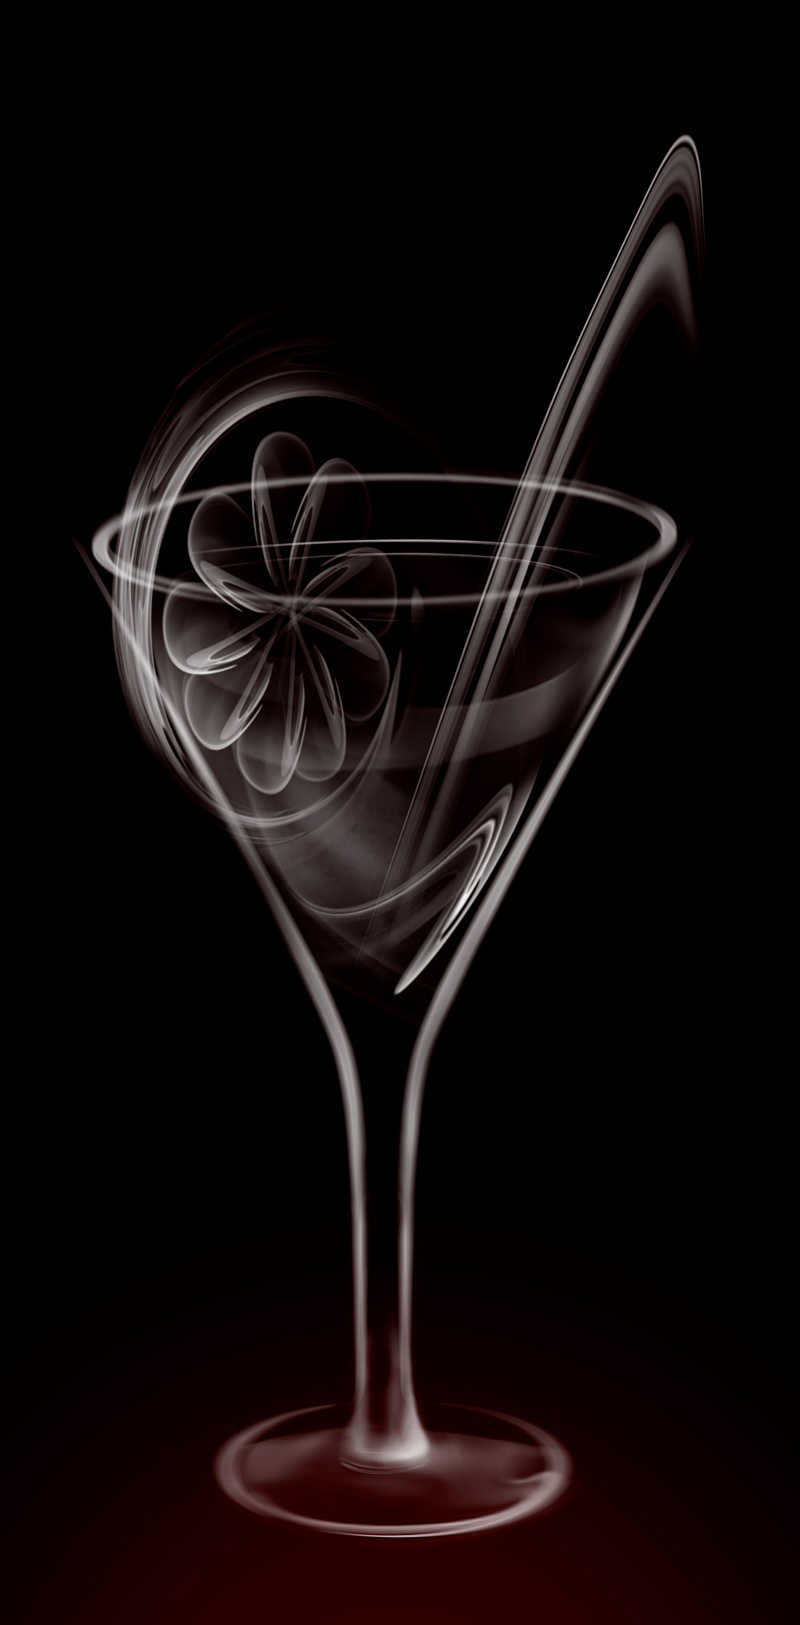 黑色背景上果汁杯的艺术烟雾插图